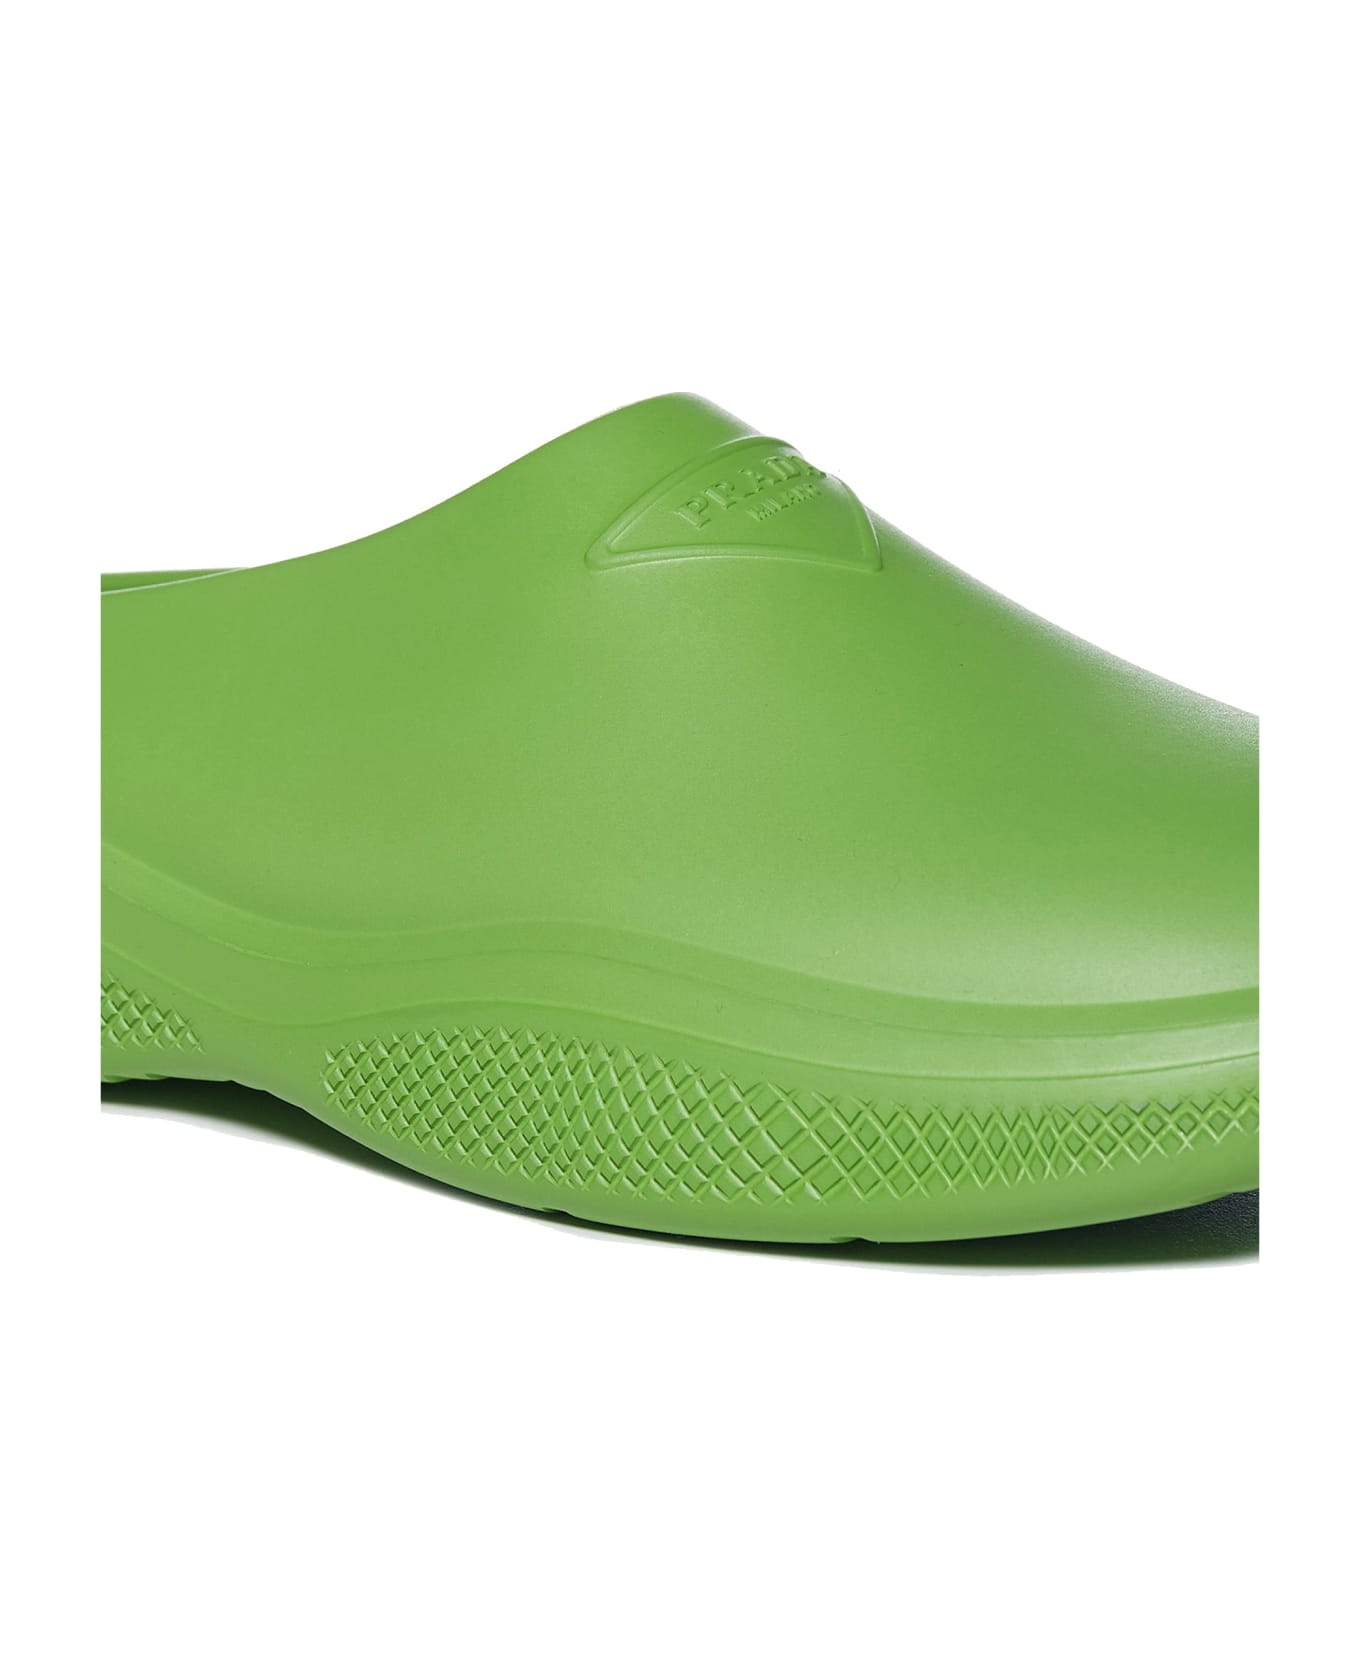 Prada Mellow Rubber Slippers - Green